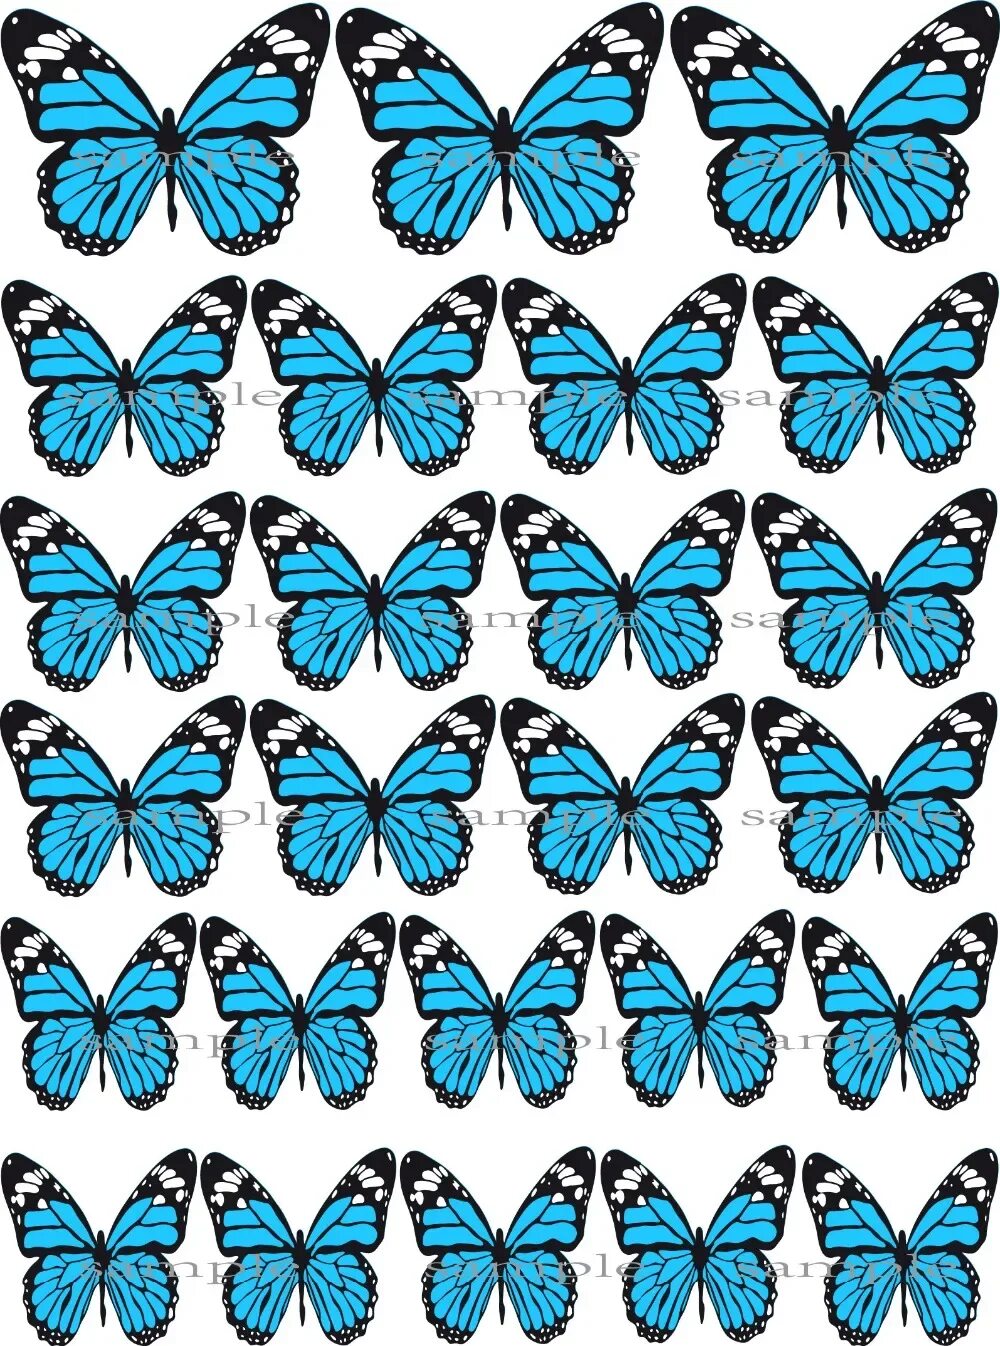 Торт «бабочки». Бабочки для печати. Бабочки на вафельной бумаге. Декор торта с бабочками. Бабочки для торта картинки для печати